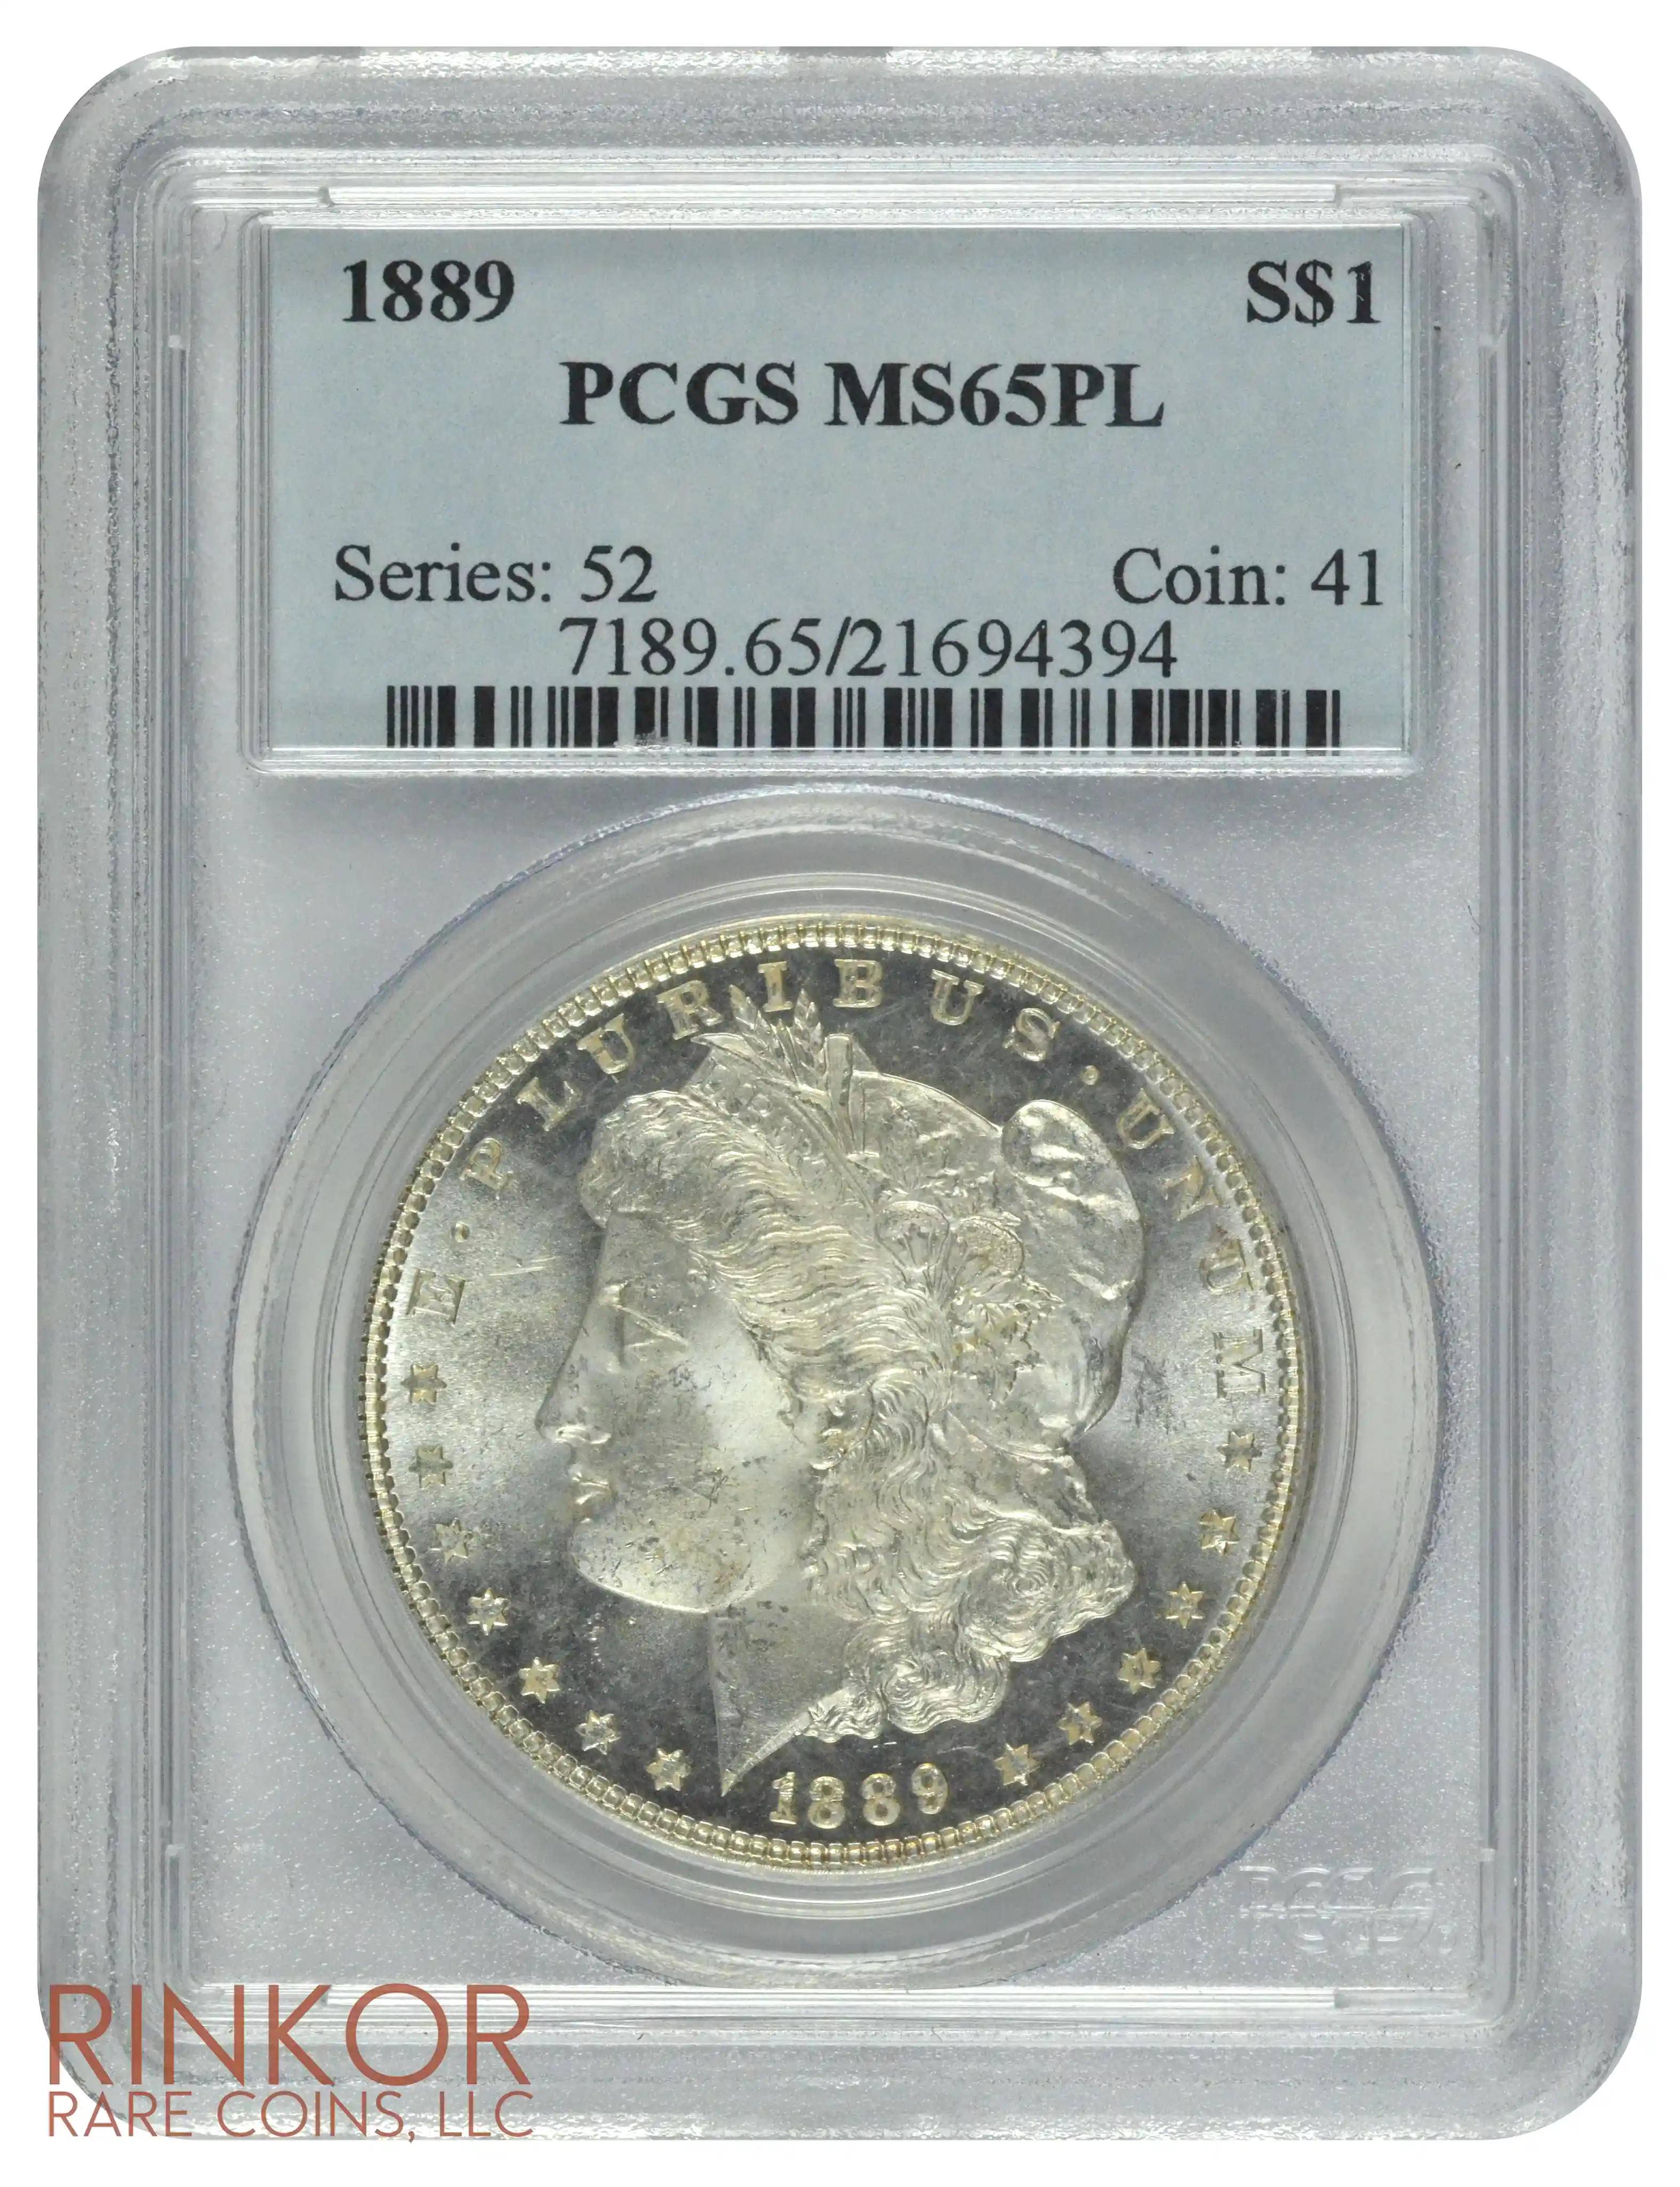 1889 $1 PCGS MS 65 PL